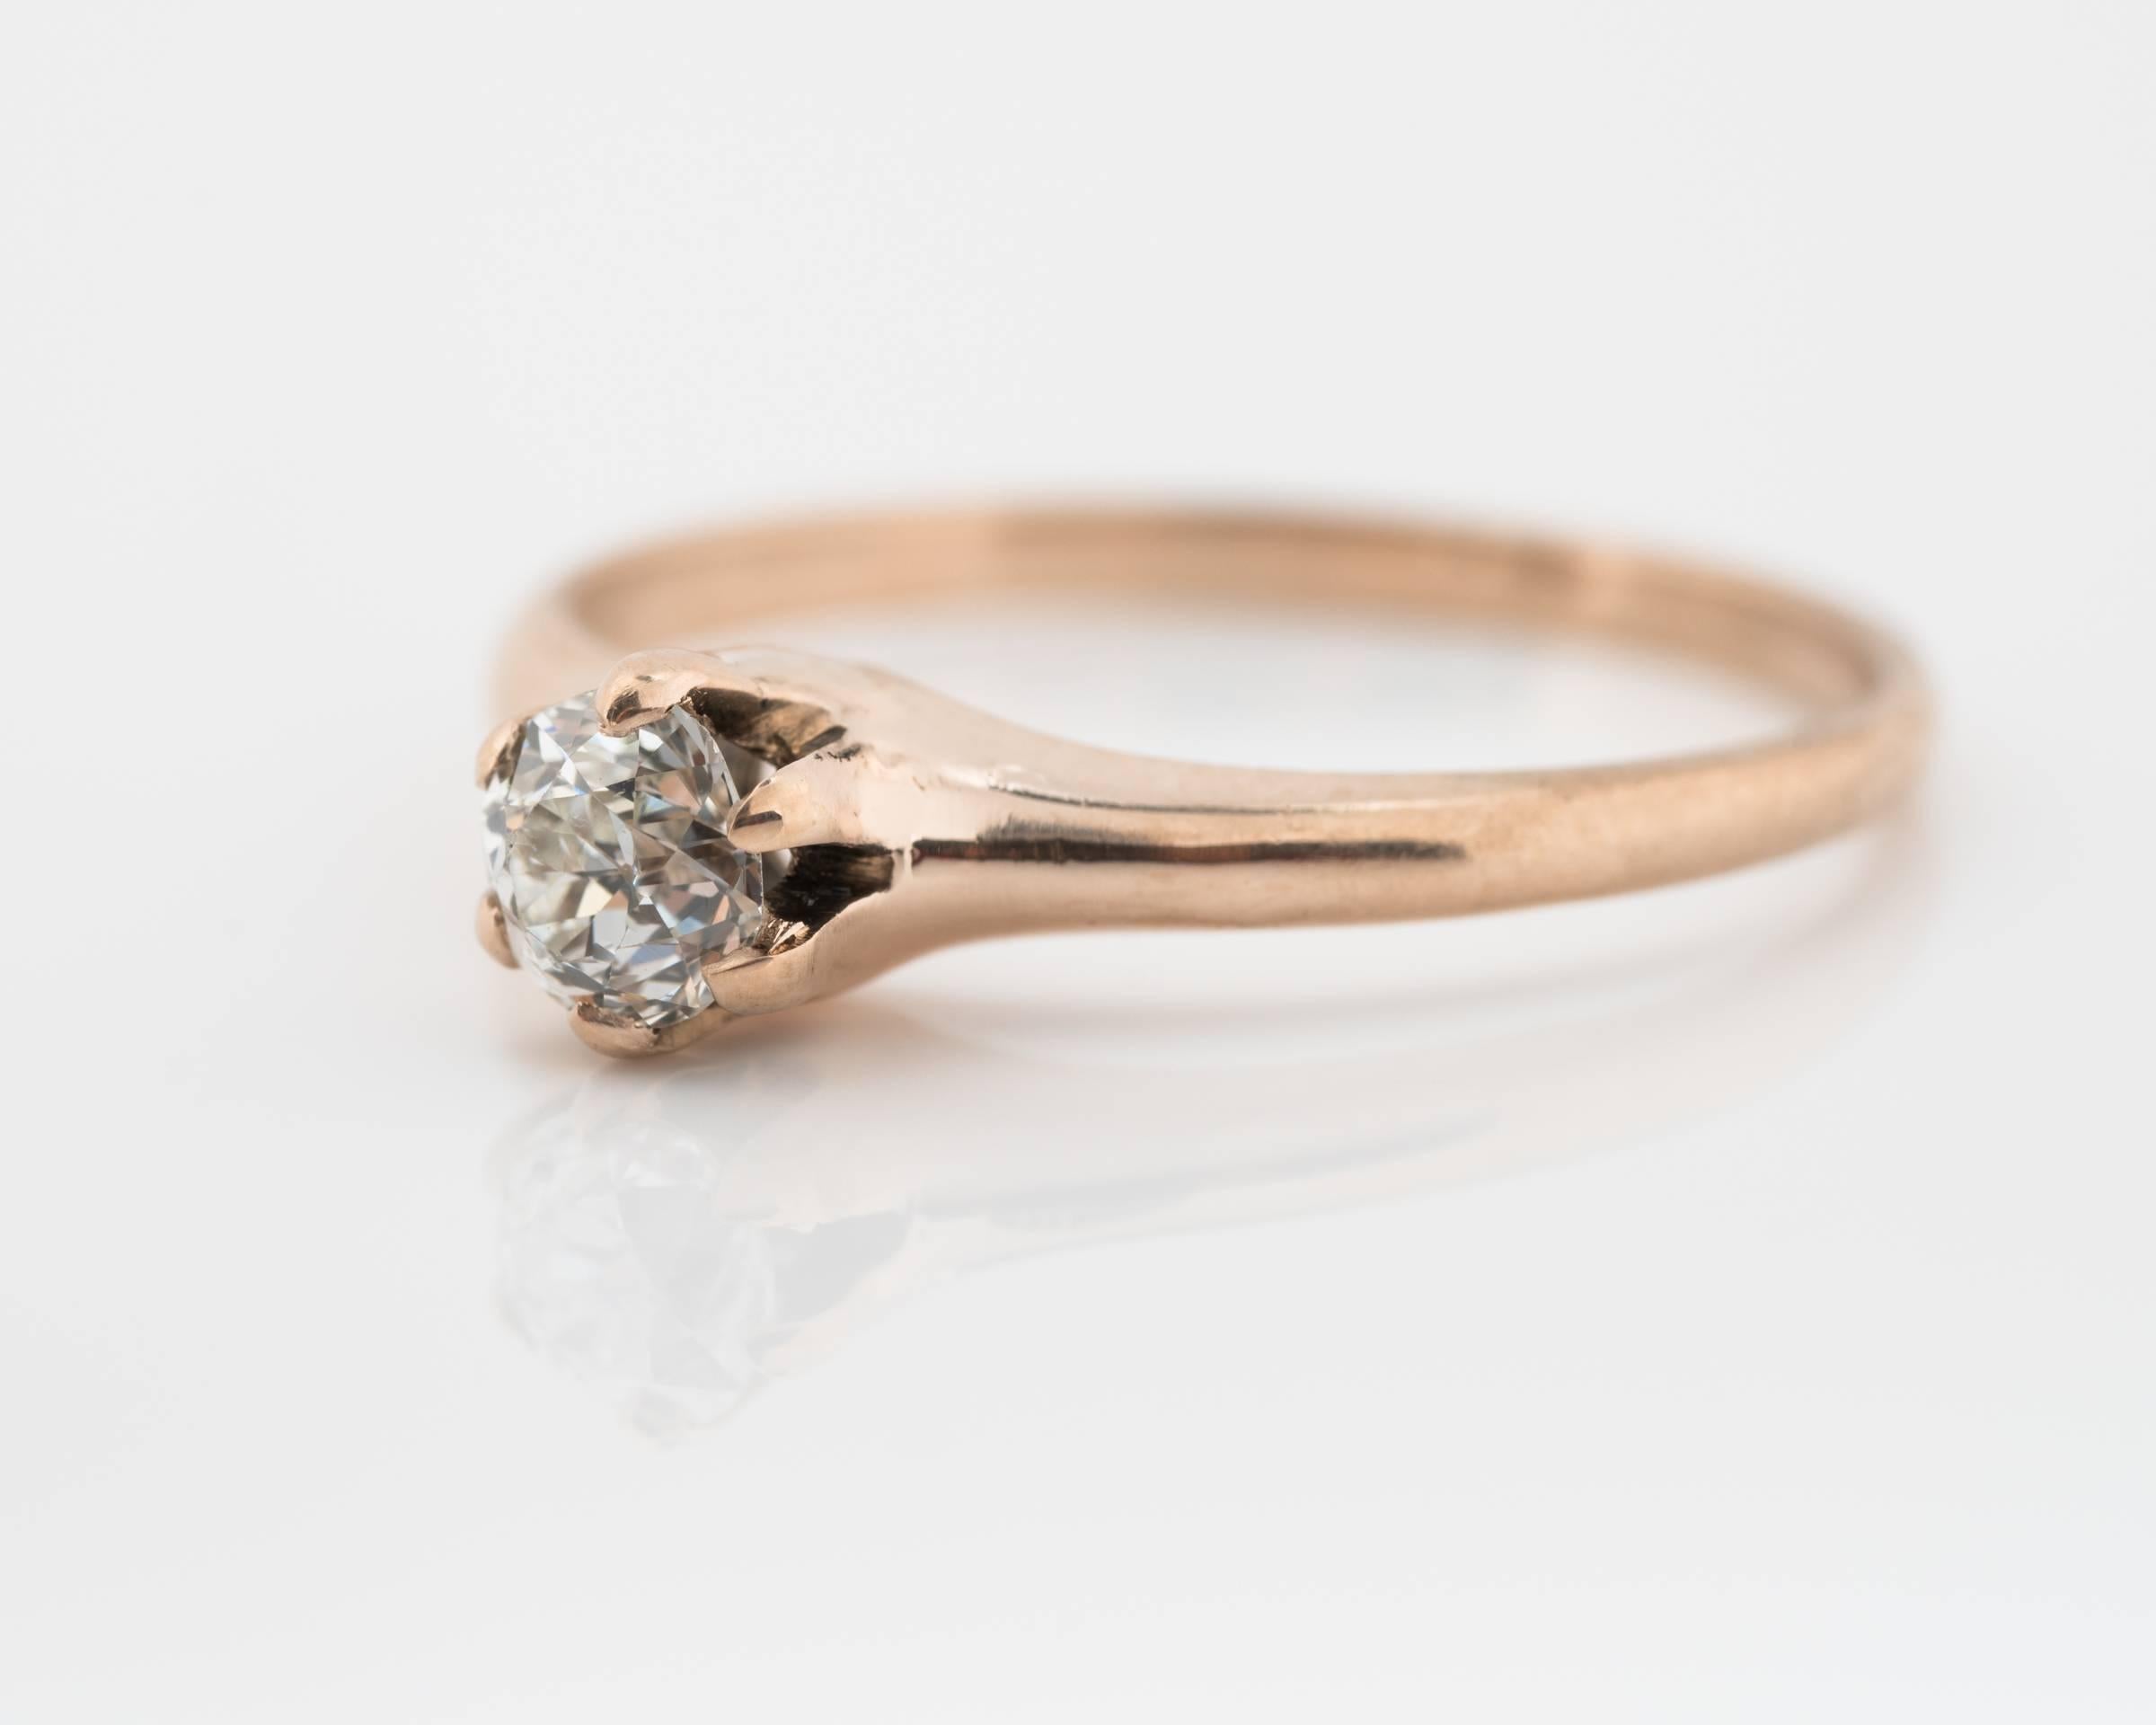 1900s Edwardian .32 Carat Old Miner Diamond 9 Karat Rose Gold Engagement Ring. 
Diamant solitaire de style vieux mineur serti à 6 branches
Le diamant mesure 0,32 carats, taille ancienne, couleur H, pureté SI2.
Monture en or rose 9 carats
Convient à